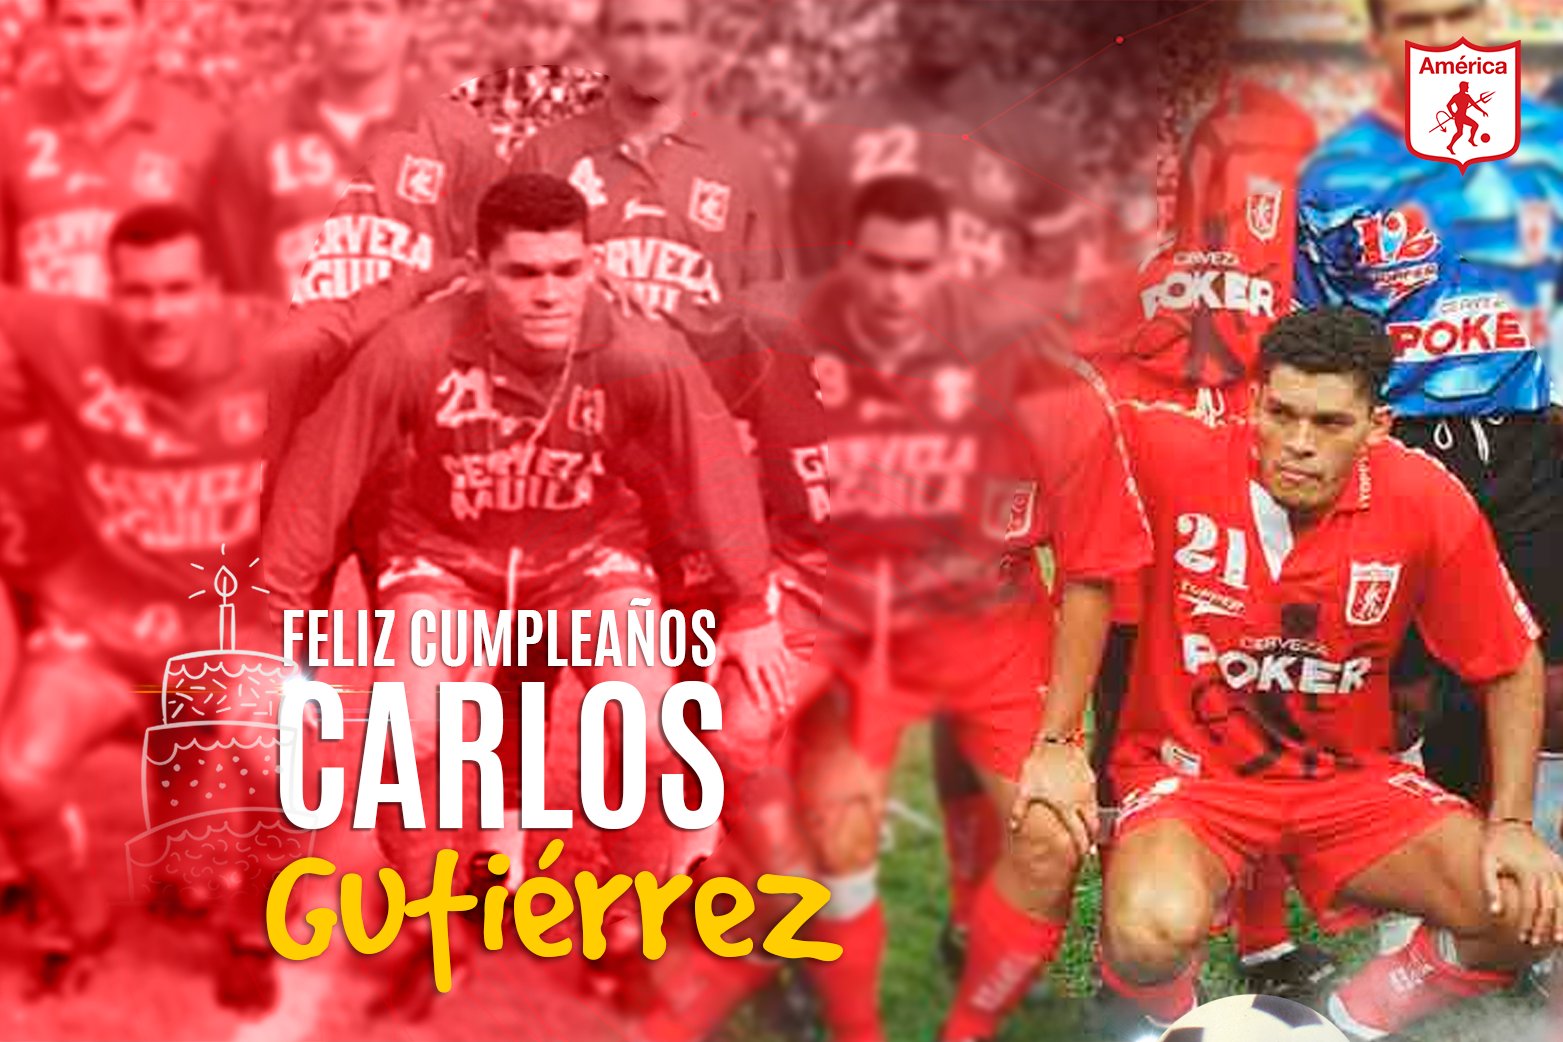 Carlos gutierrez futbolista colombiano